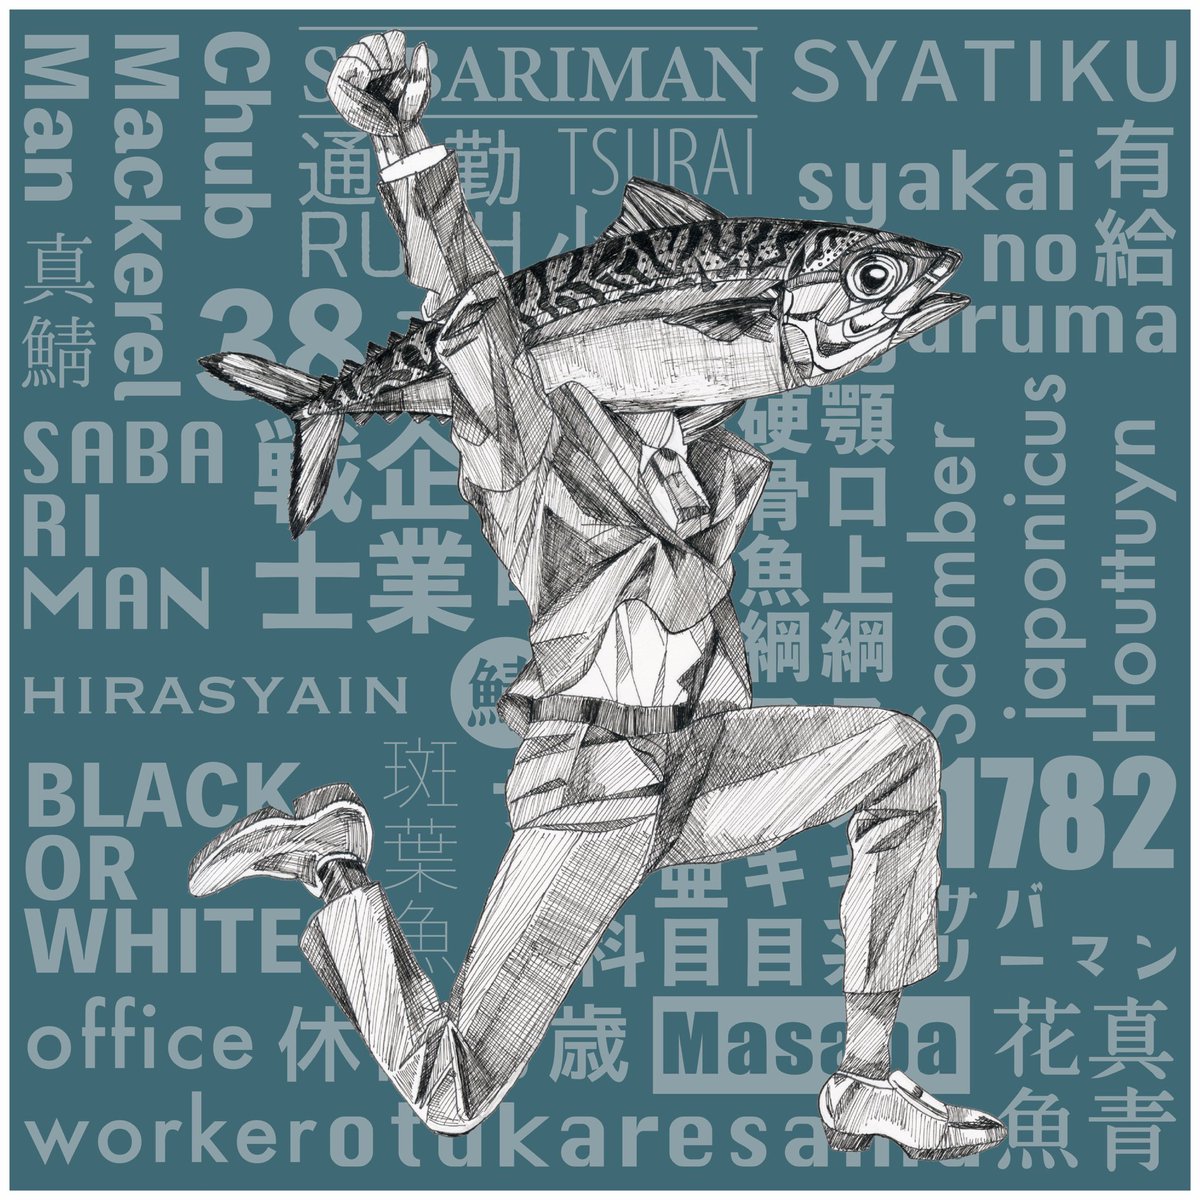 #art #illustration #イラスト #サバリーマン
テンションが高い鯖島鯖男(38歳) 